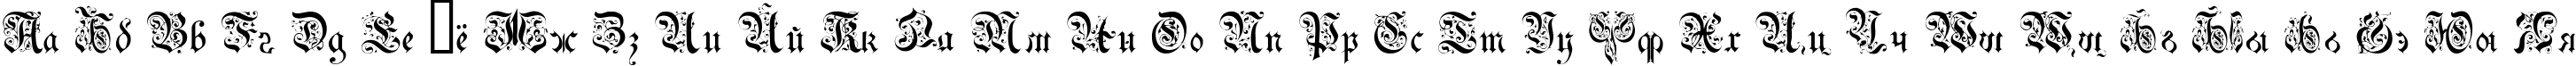 Пример написания русского алфавита шрифтом DrPoDecorRu